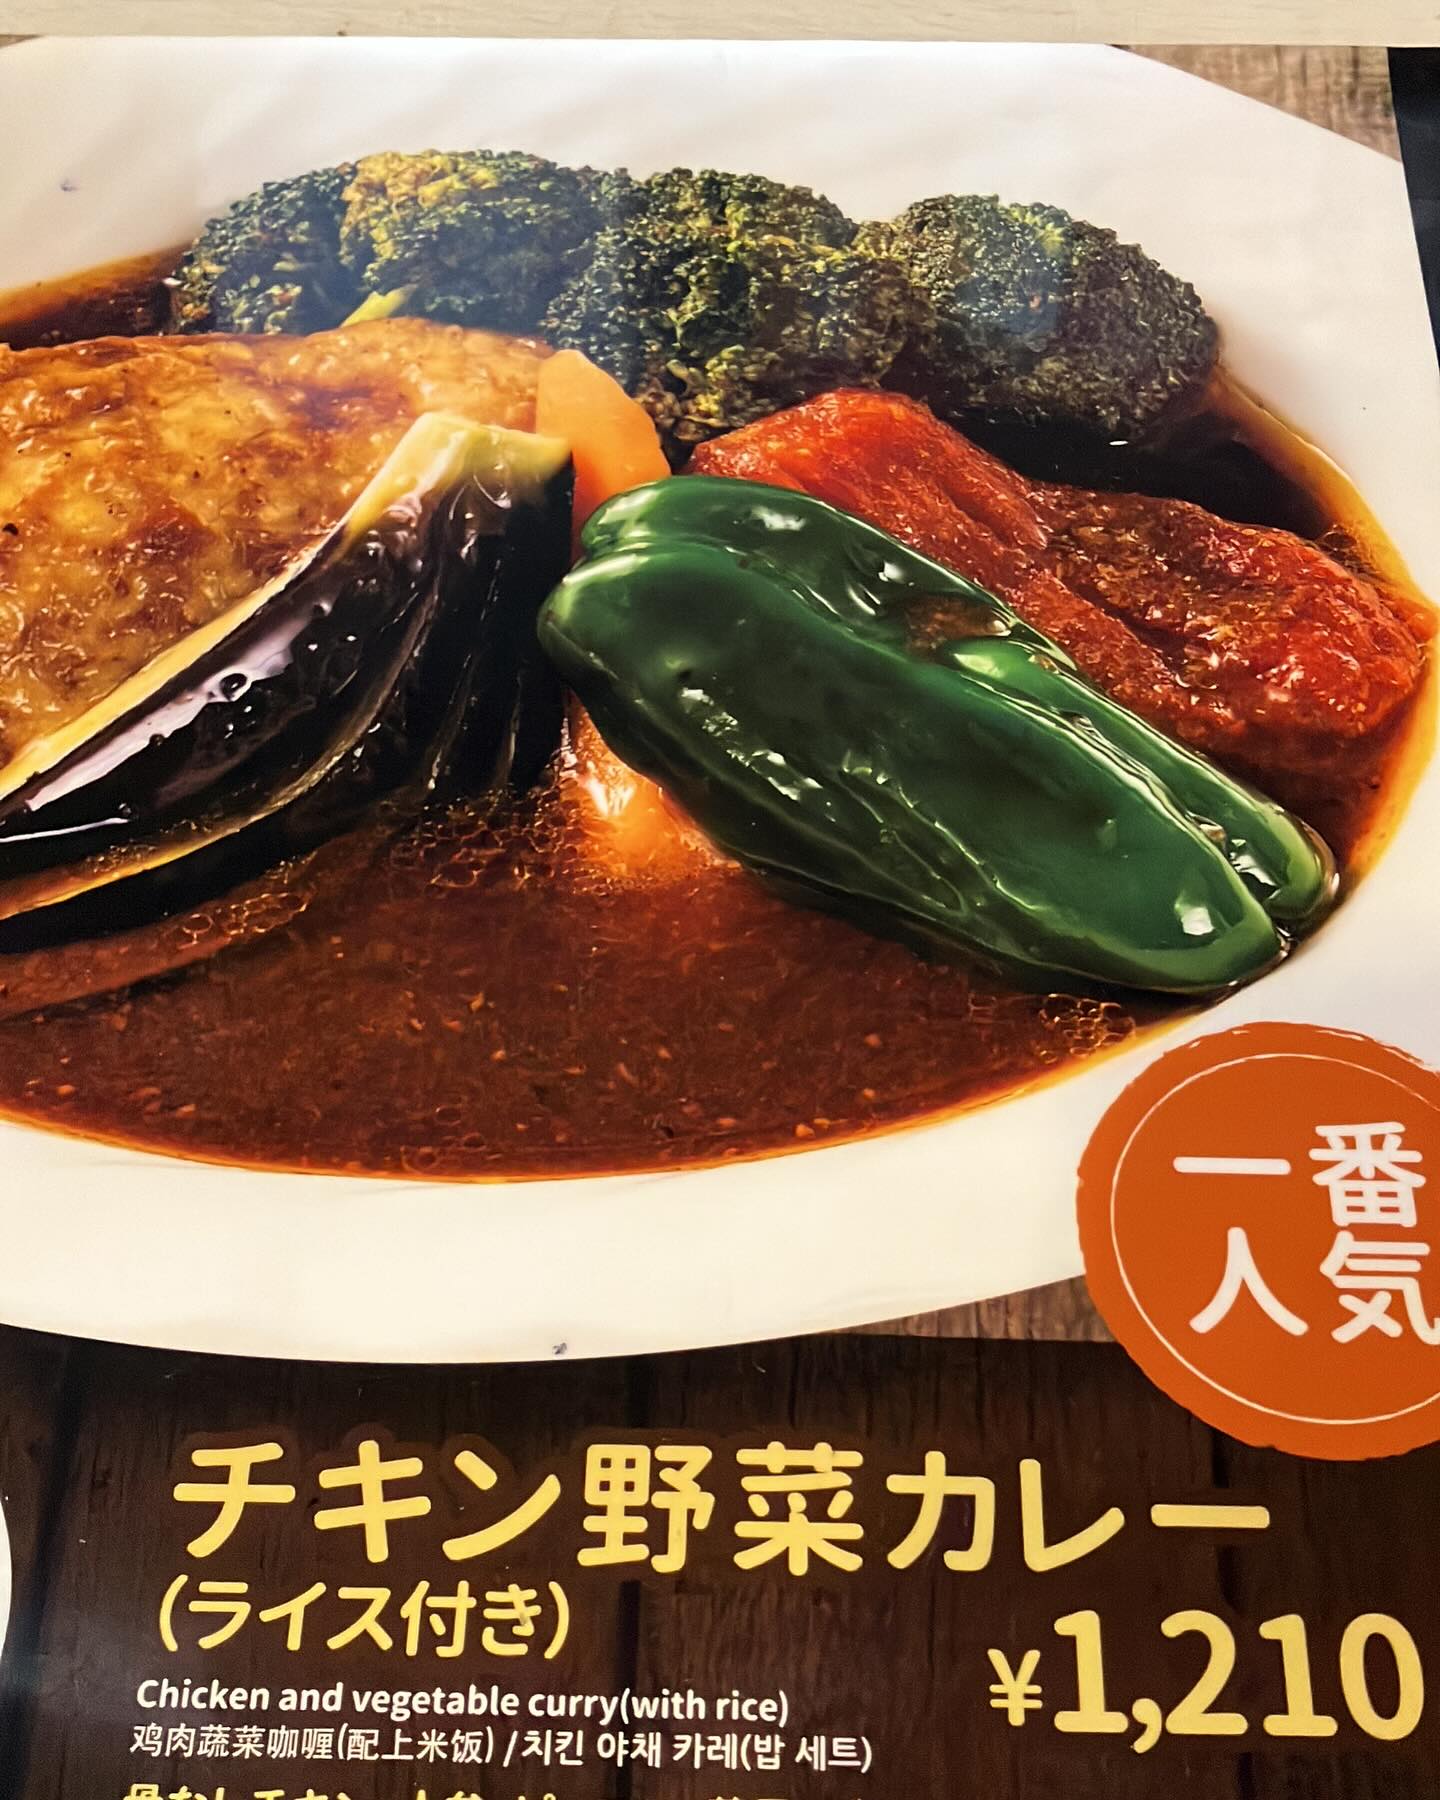 Soup Curry Kamui Akiba (Shin K